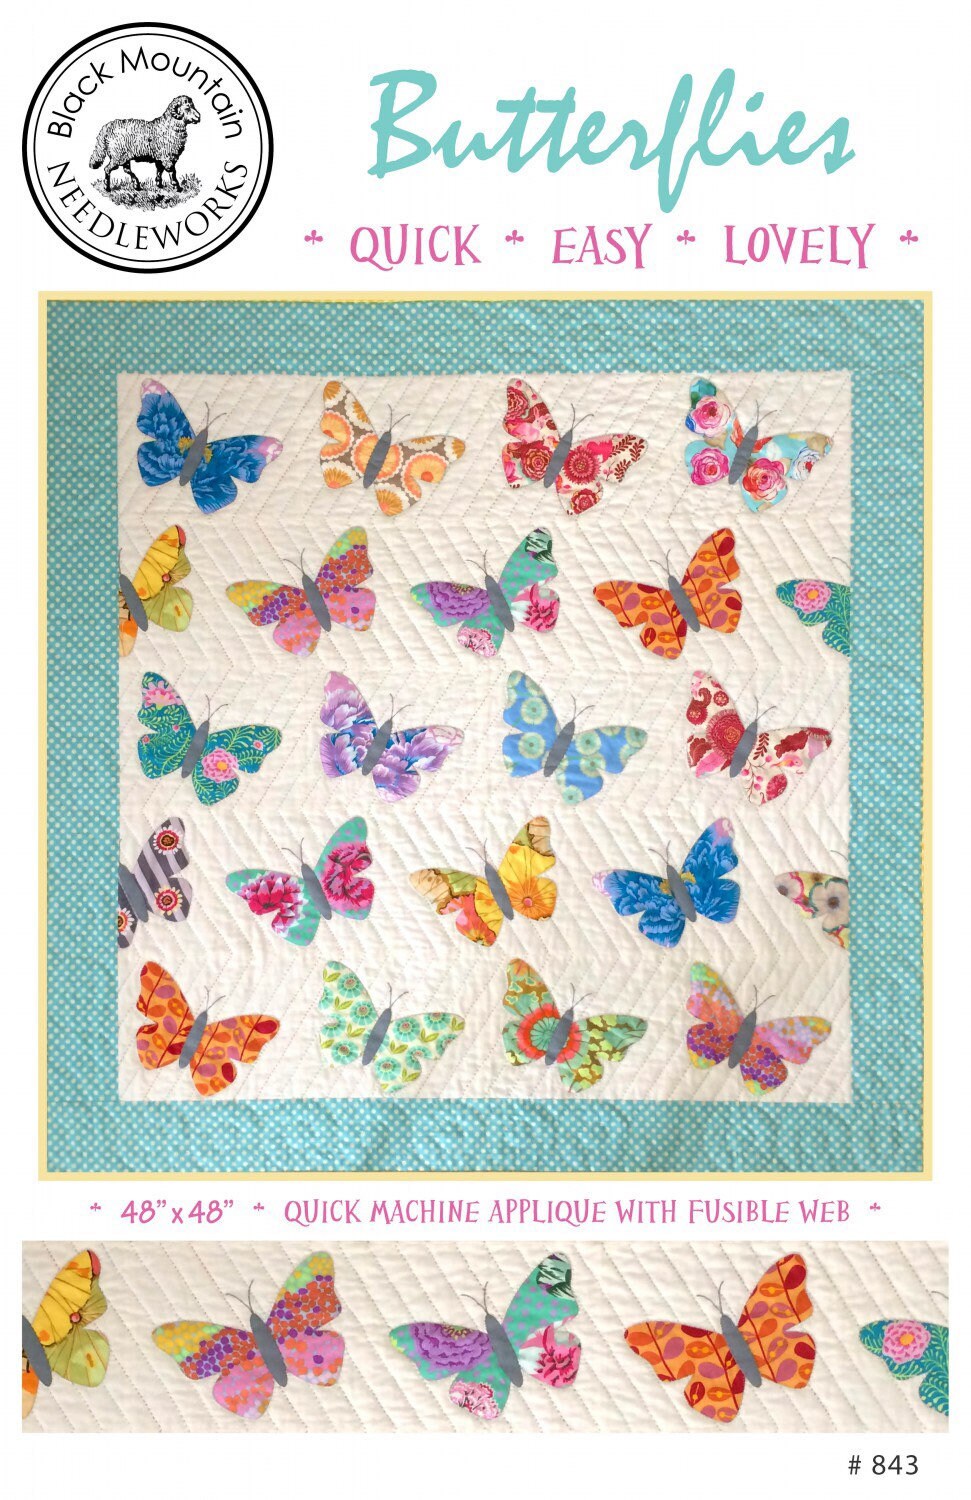 Butterflies Quilt Pattern - Black Mountain Needleworks - Teri Christopherson - Appliqué Quilt